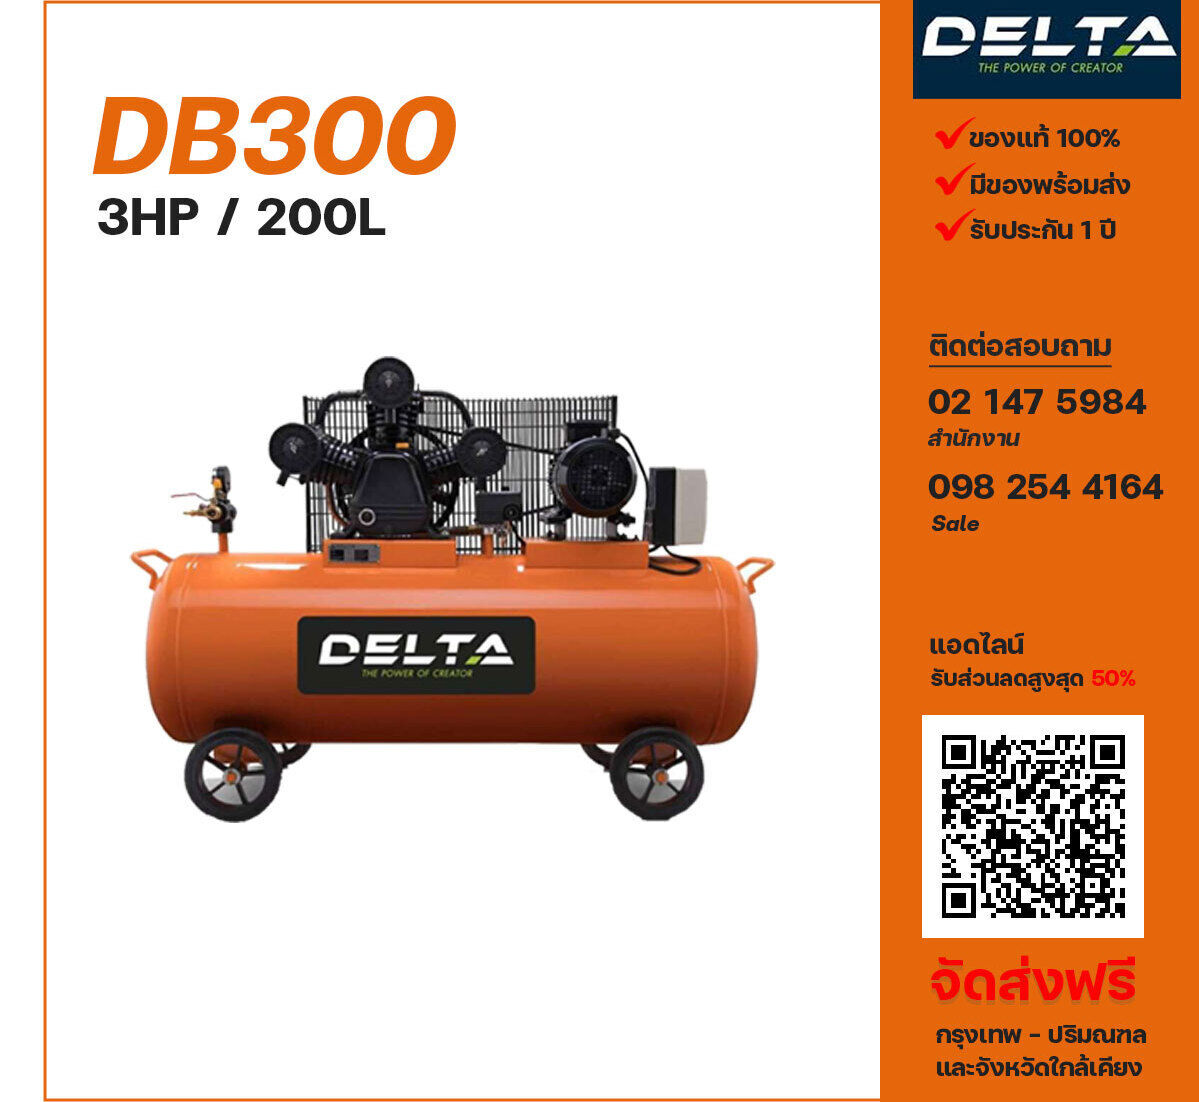 ปั๊มลมเดลต้า DELTA DB300 220V/380V ปั๊มลมลูกสูบ ขนาด 3 สูบ 3 แรงม้า 200 ลิตร DELTA พร้อมมอเตอร์ ไฟ 220V/380V ส่งฟรี กรุงเทพฯ-ปริมณฑล รับประกัน 1 ปี